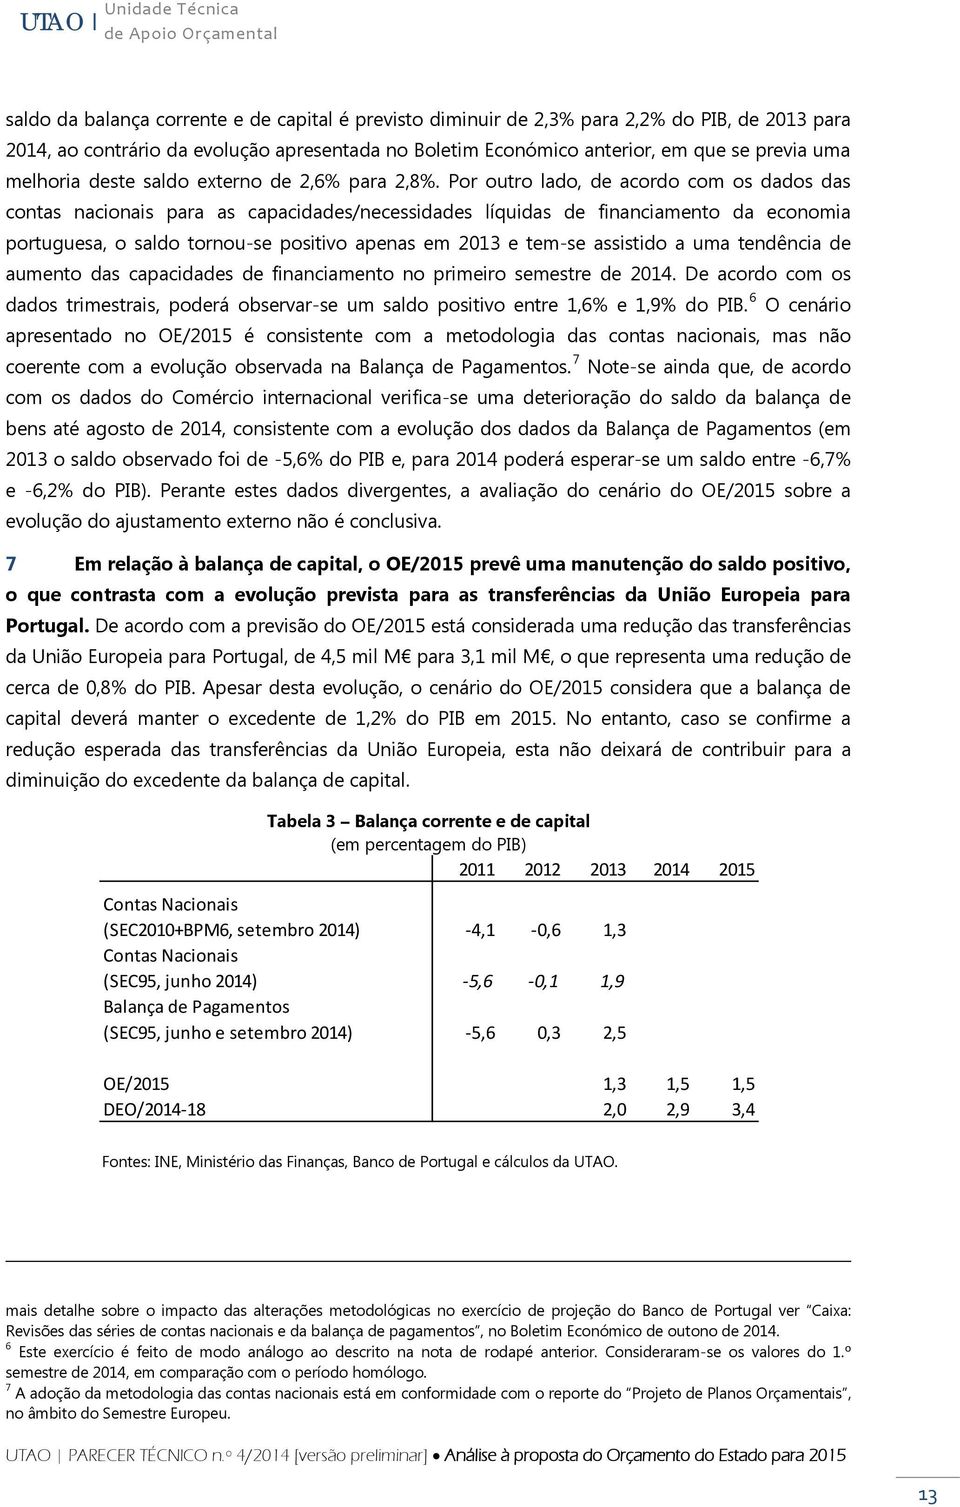 Por outro lado, de acordo com os dados das contas nacionais para as capacidades/necessidades líquidas de financiamento da economia portuguesa, o saldo tornou-se positivo apenas em 2013 e tem-se